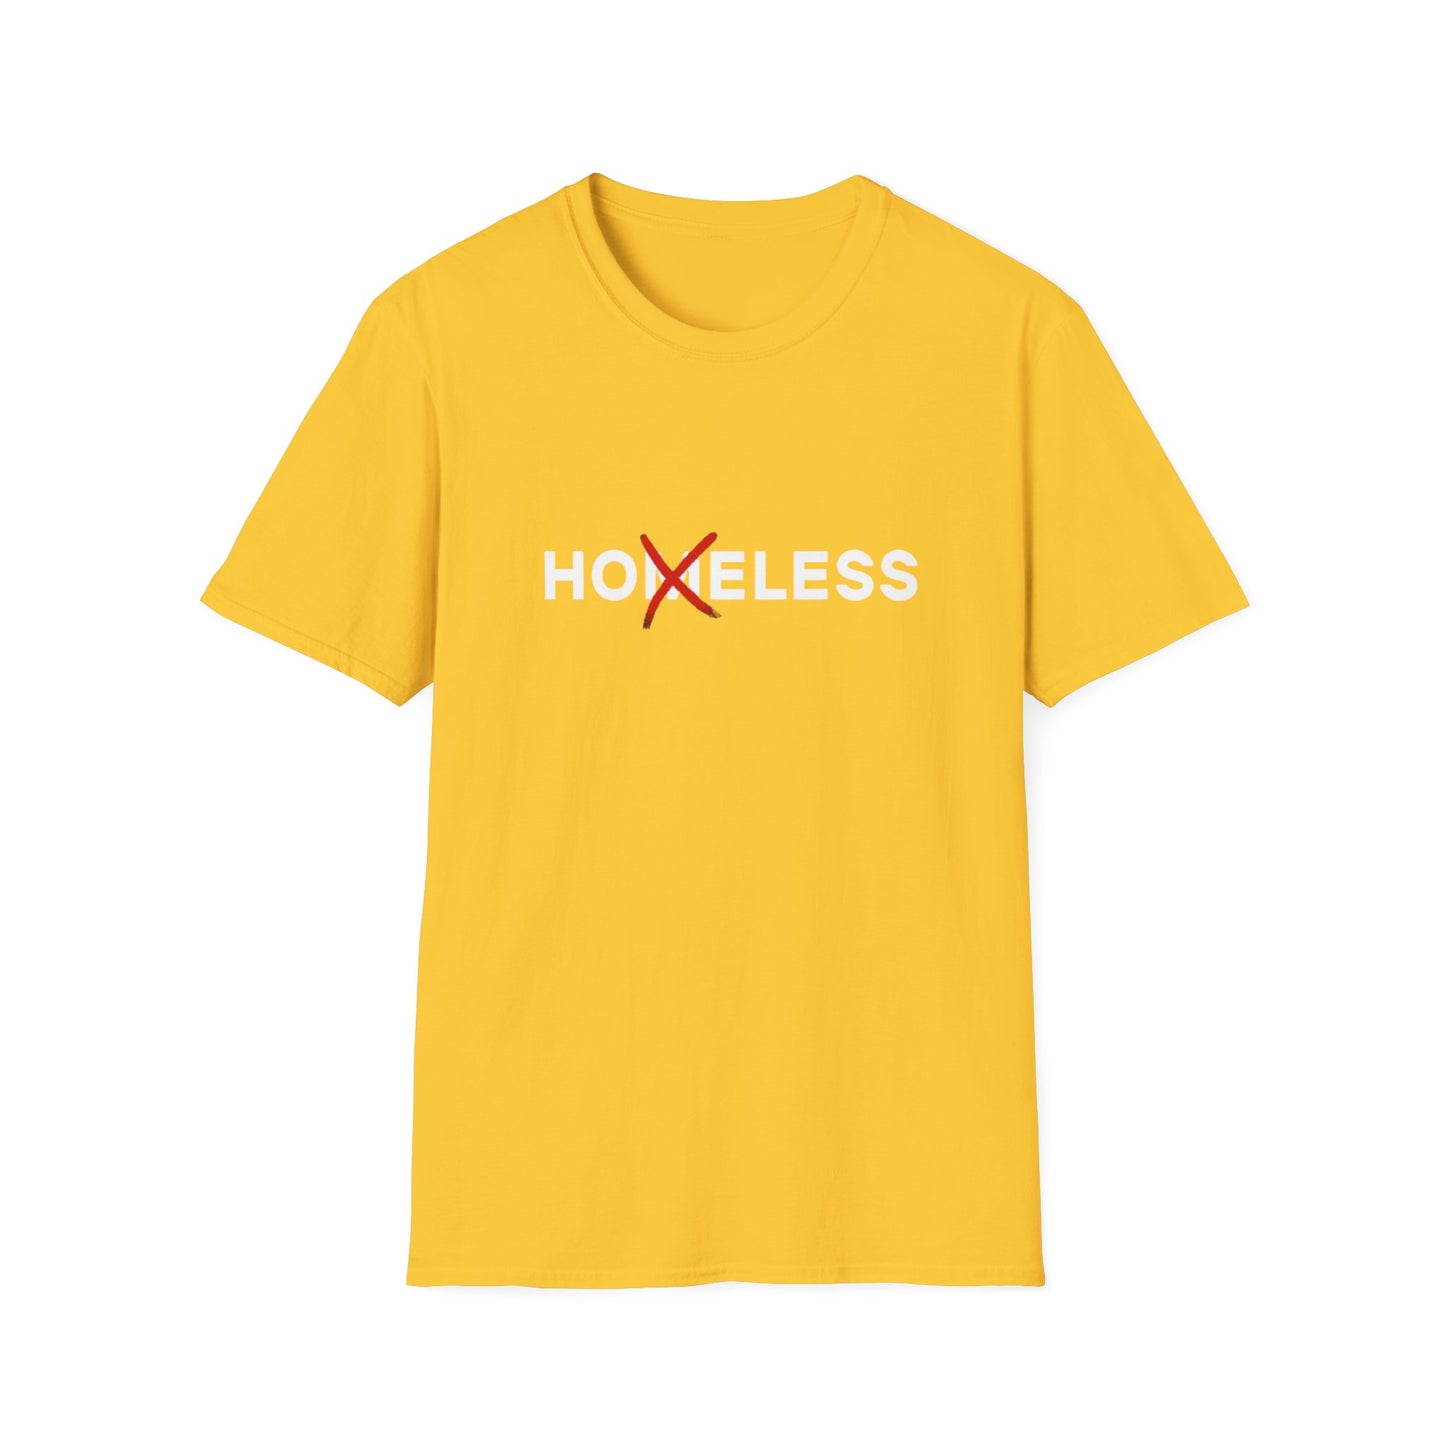 Hoeless shirt